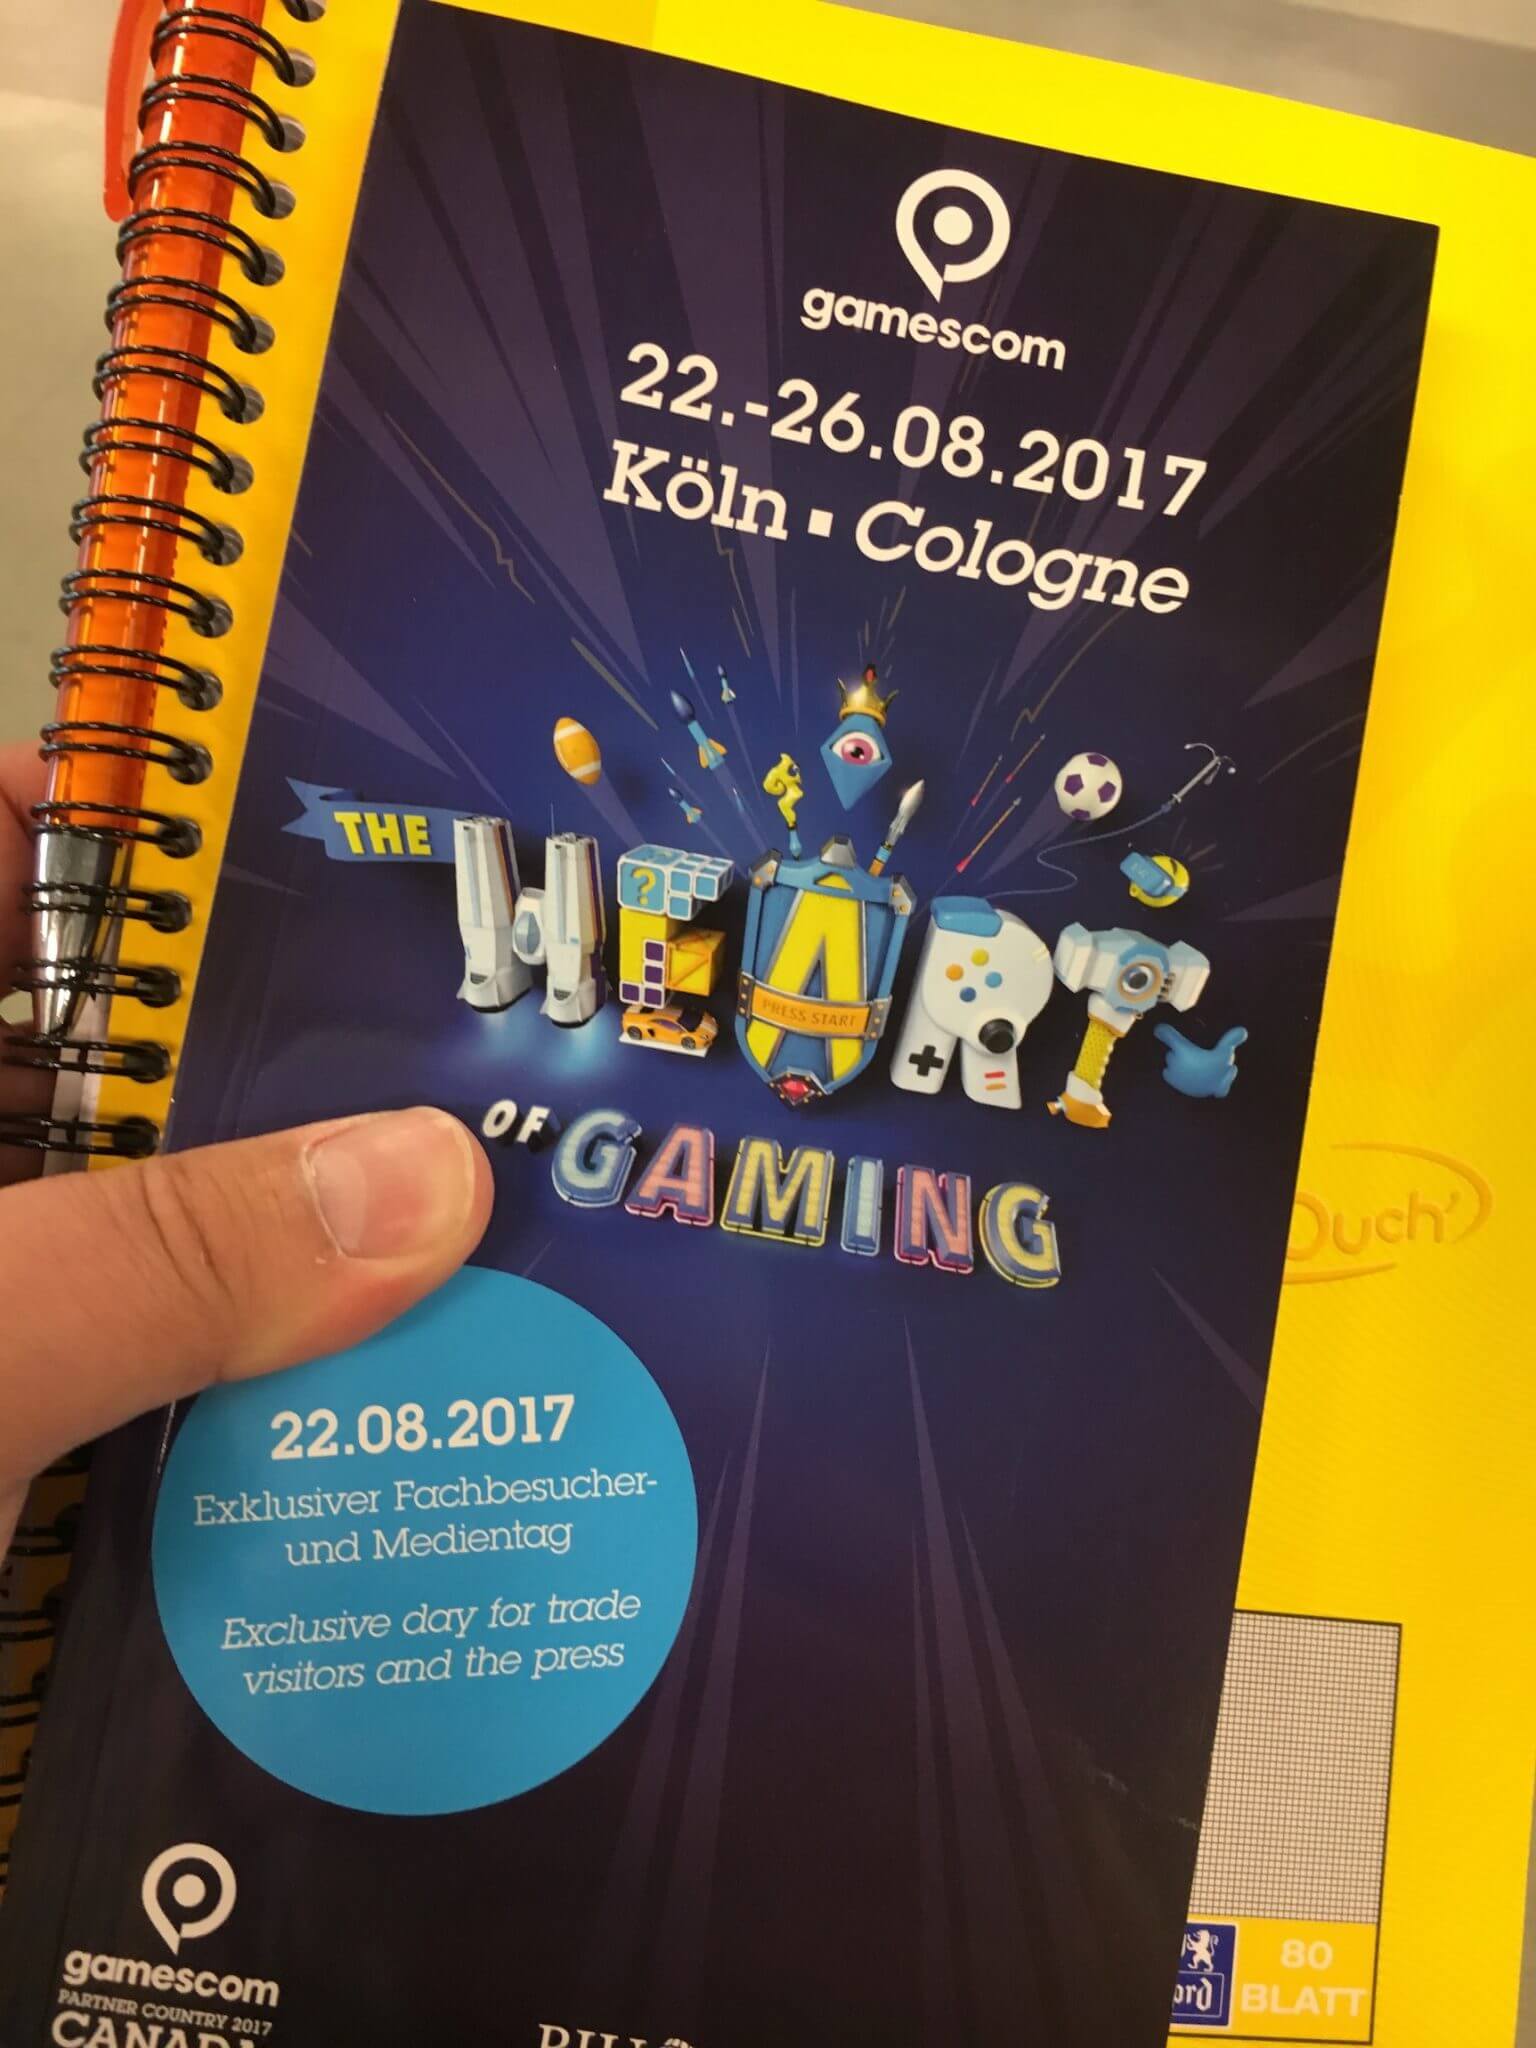 „The Heart of Gaming“ – das Motto der Gamescom 2017